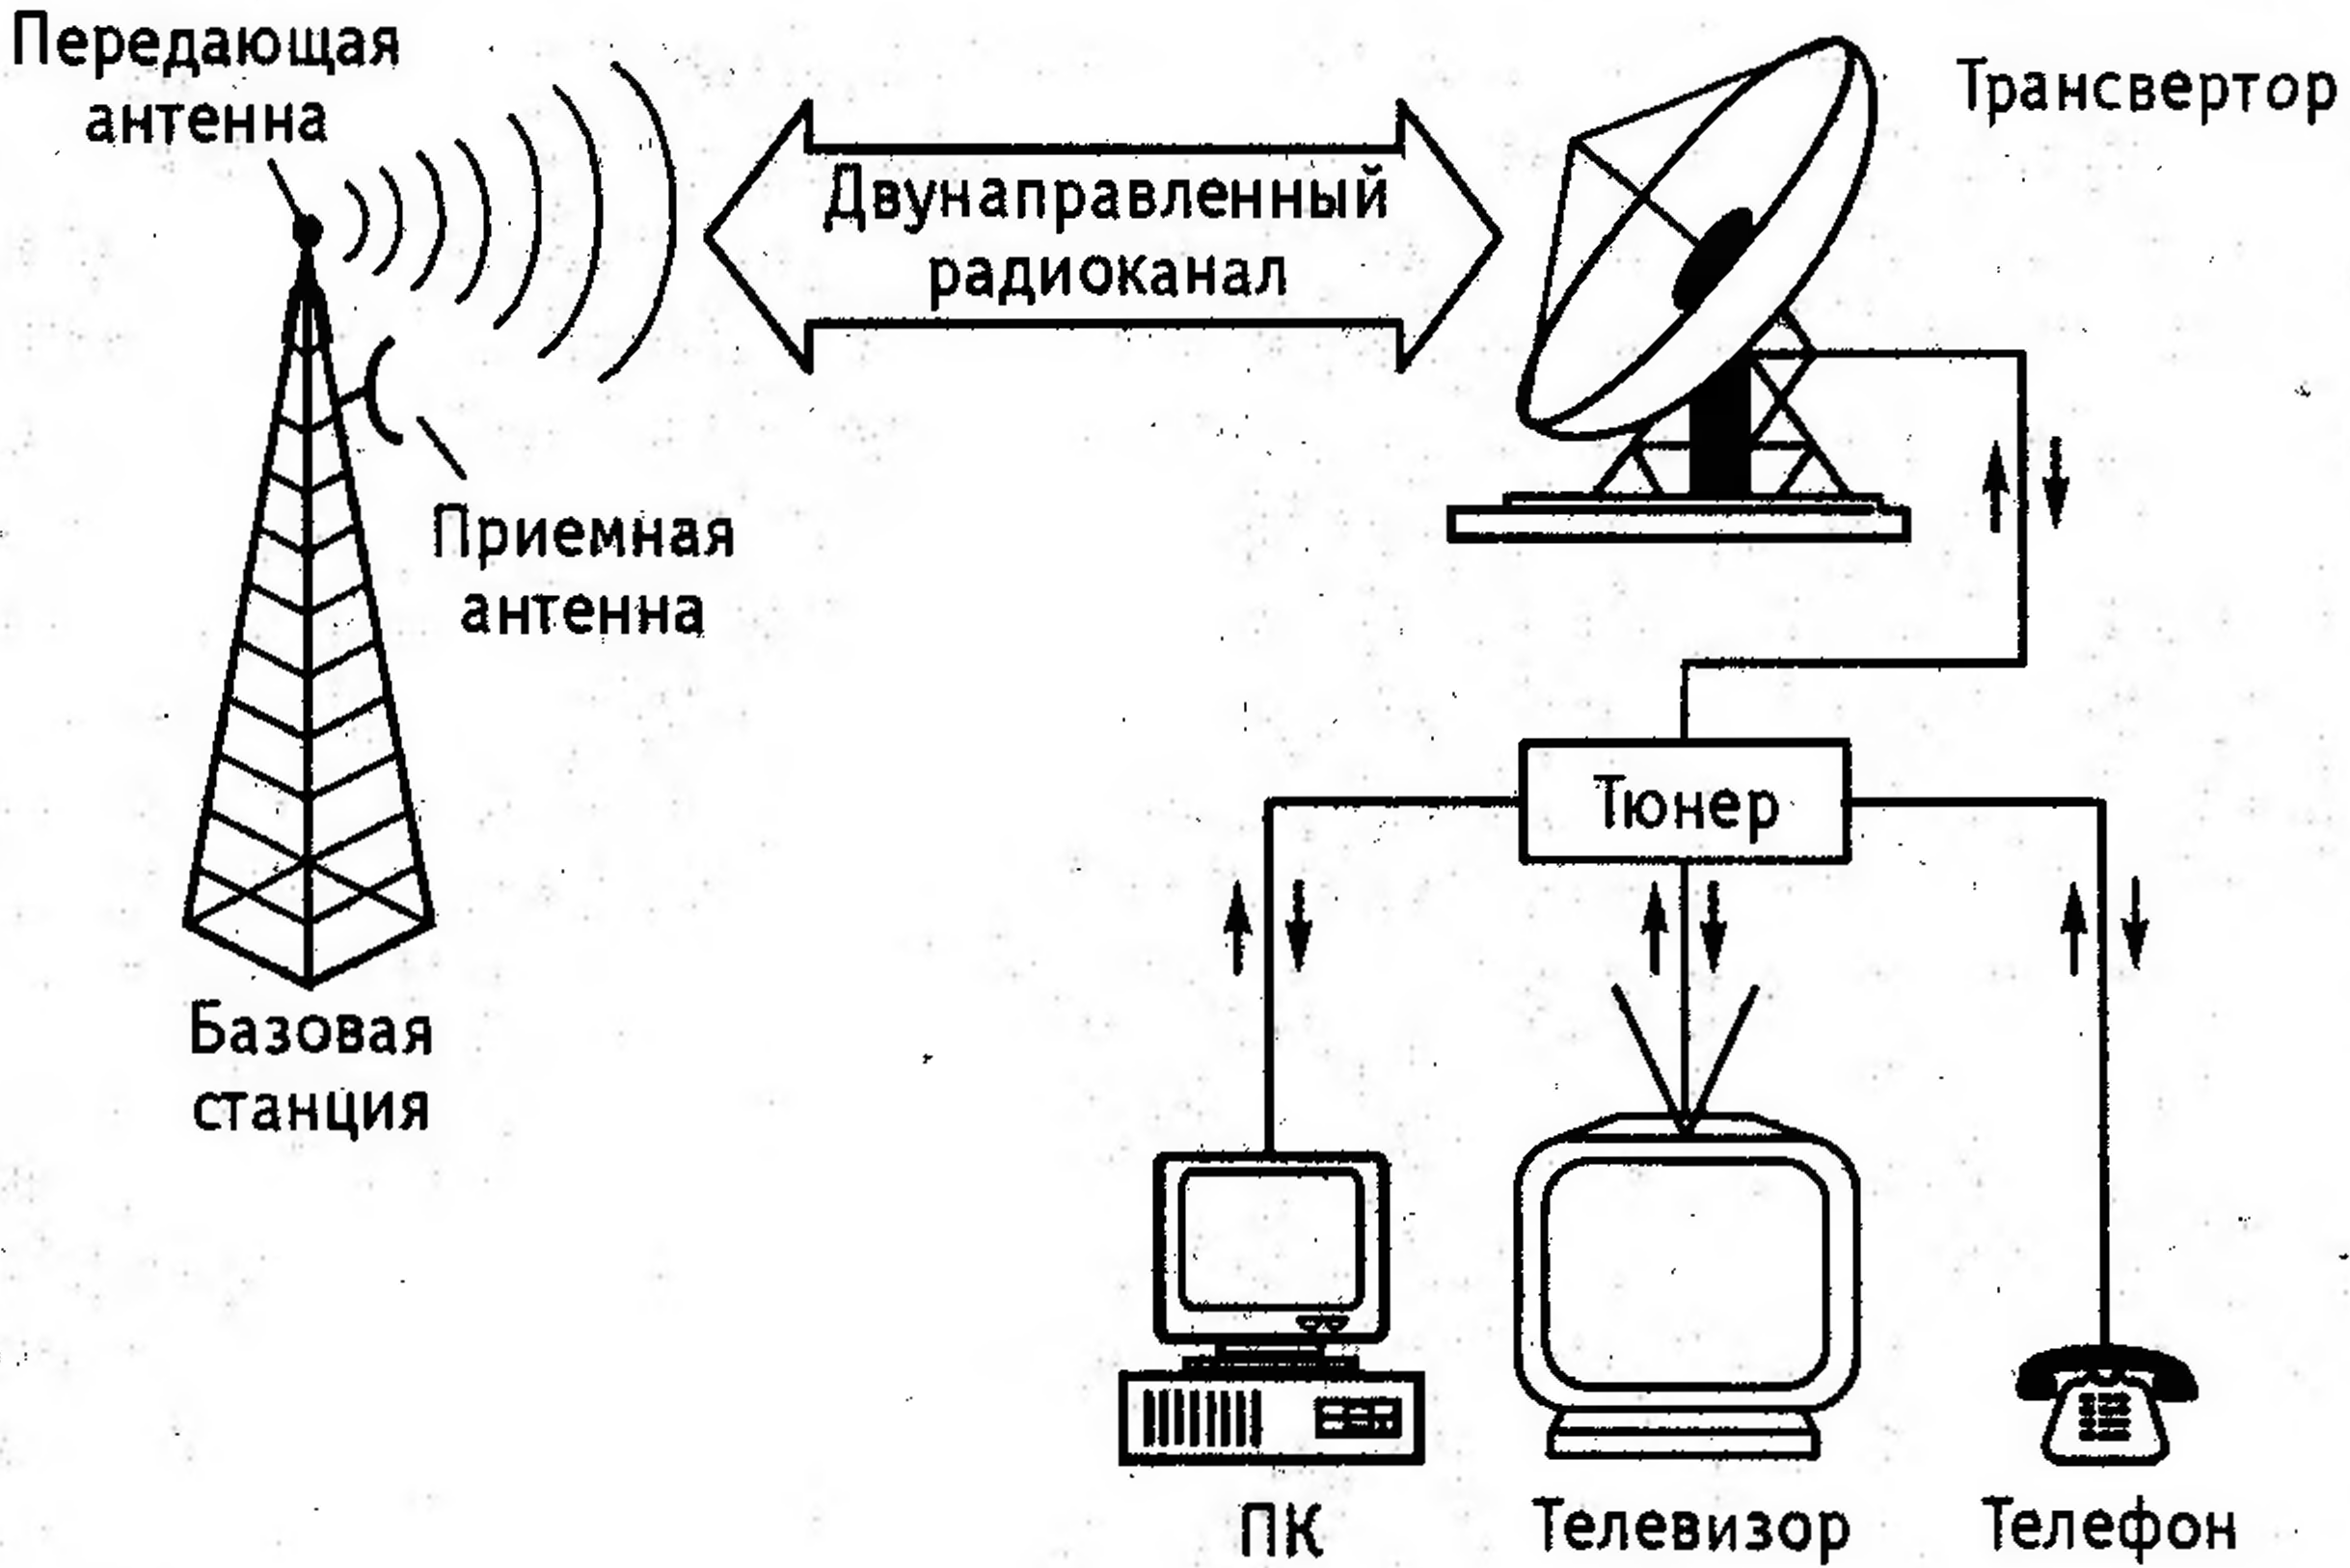 Телевизор аналоговый сигнал. Эфирное радиовещание схема. Структурная схема передвижной телевизионной станции. Схема передачи спутникового сигнала. Радиотелефонная связь схема.